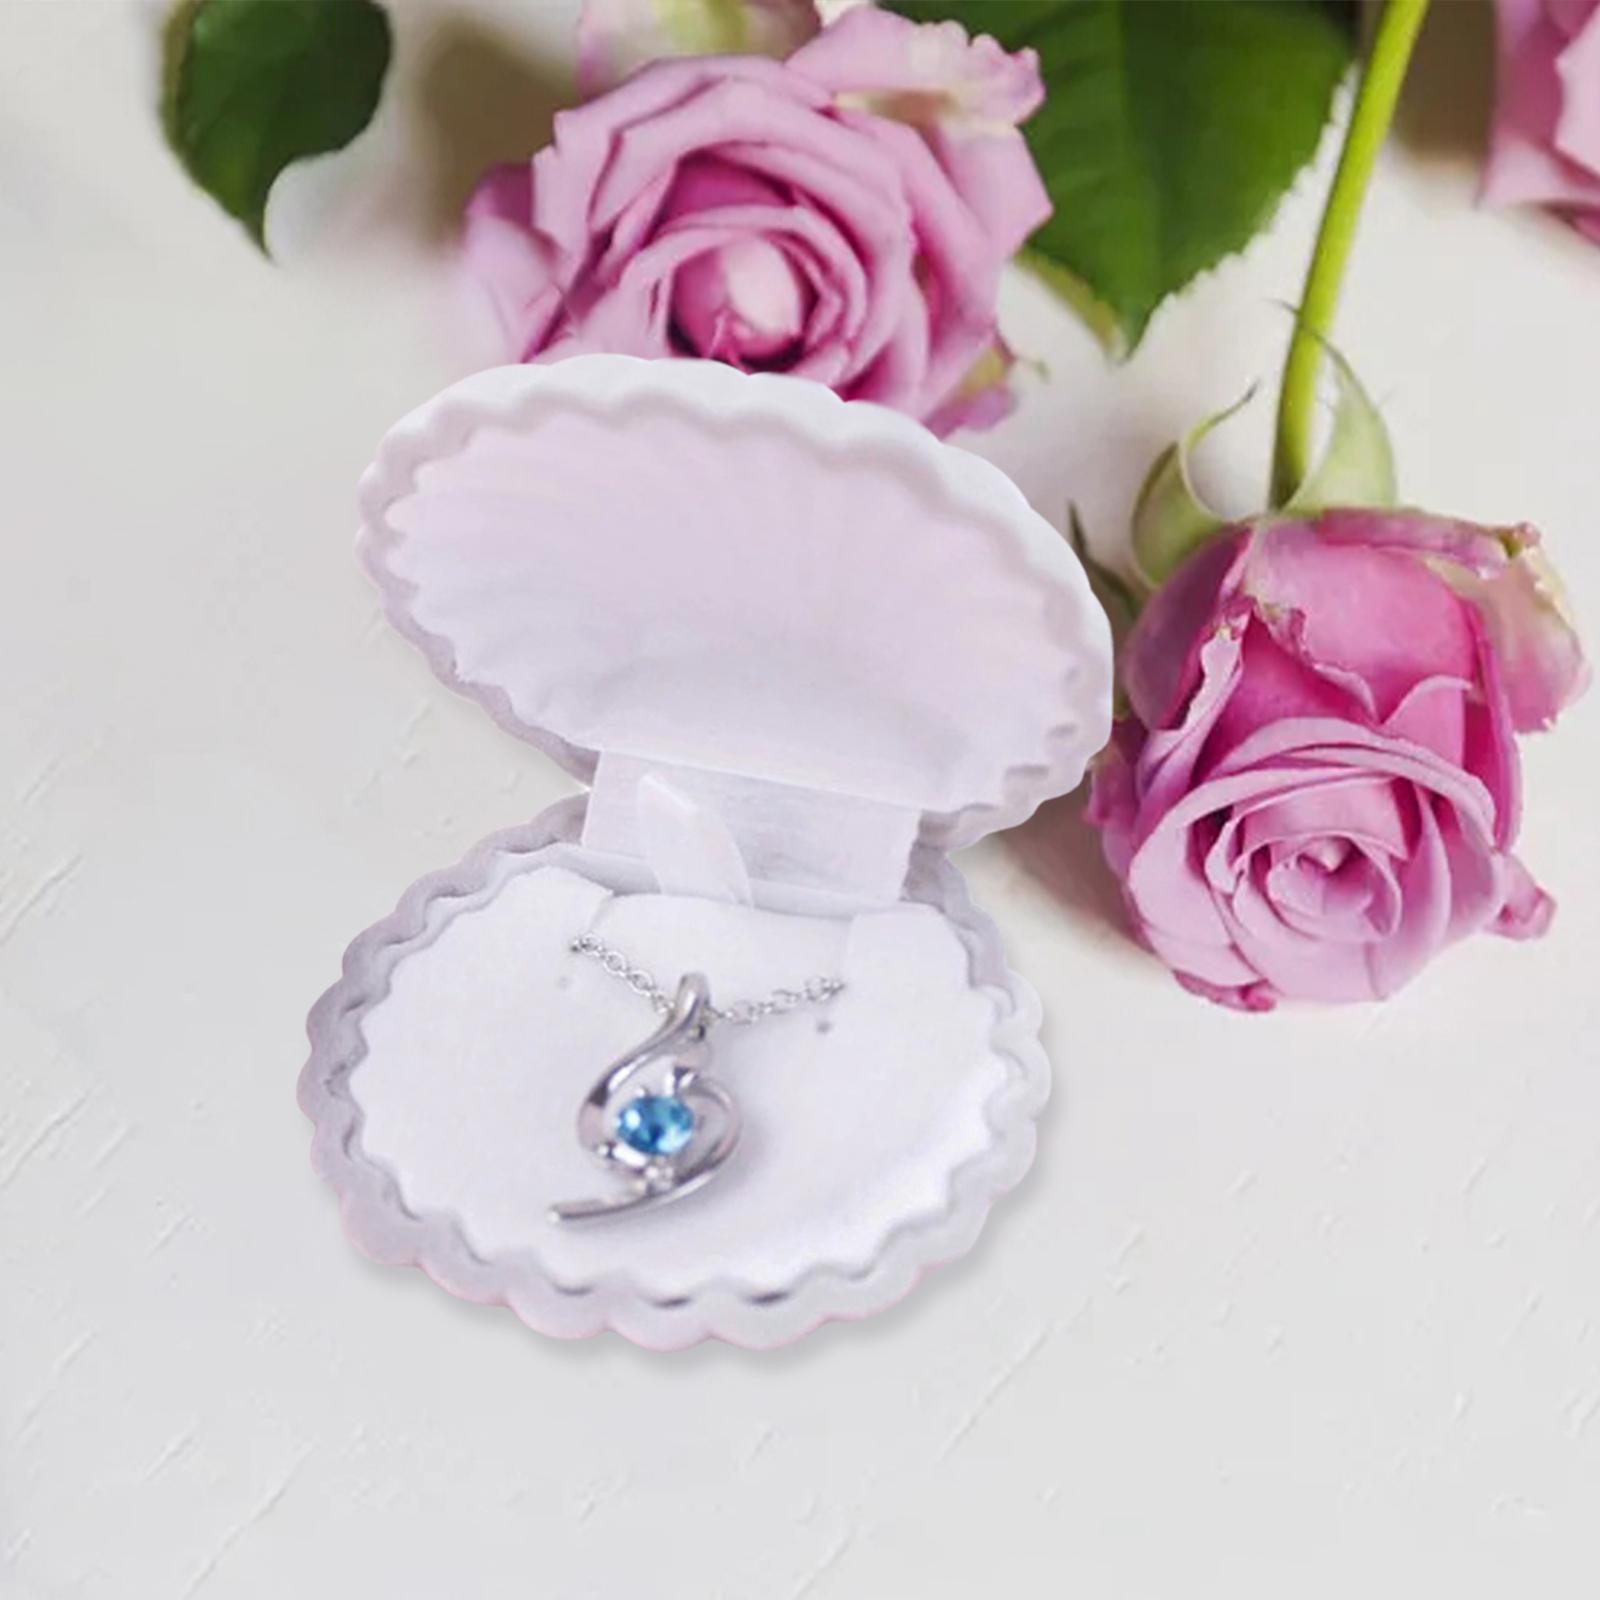 Jewelry Box Decorative Elegant Shell Shape for Wedding Engagement Decoration B